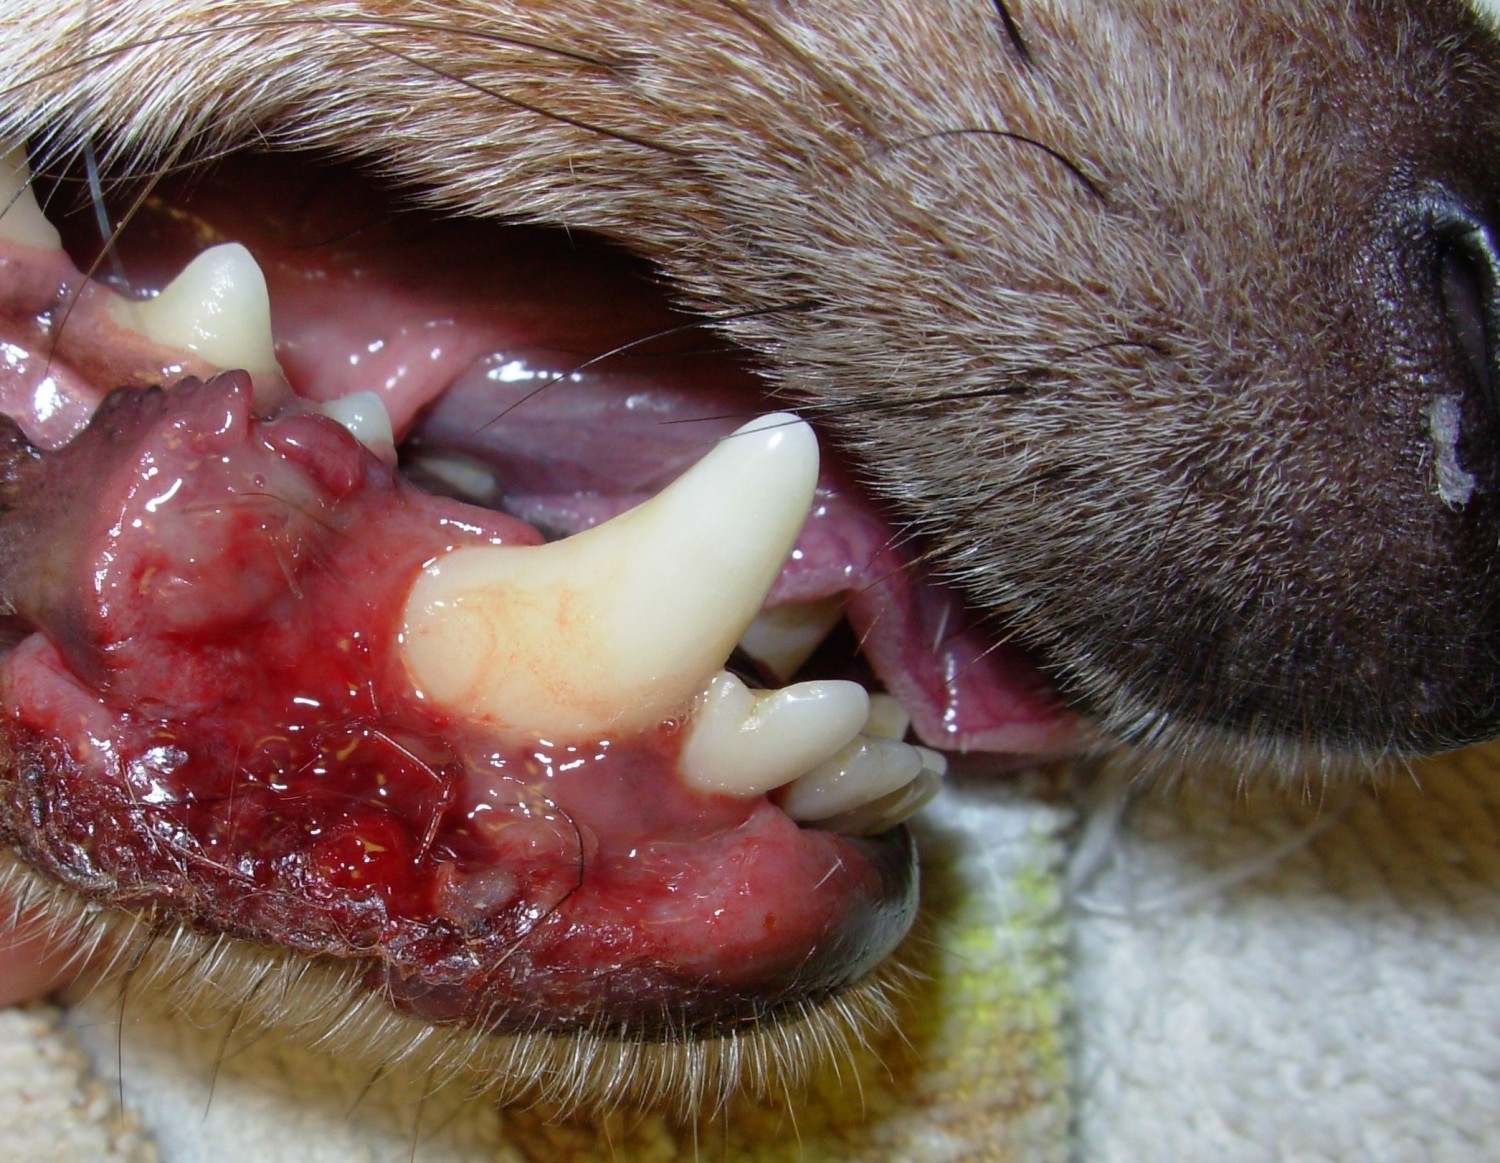 Canine Stomatitis